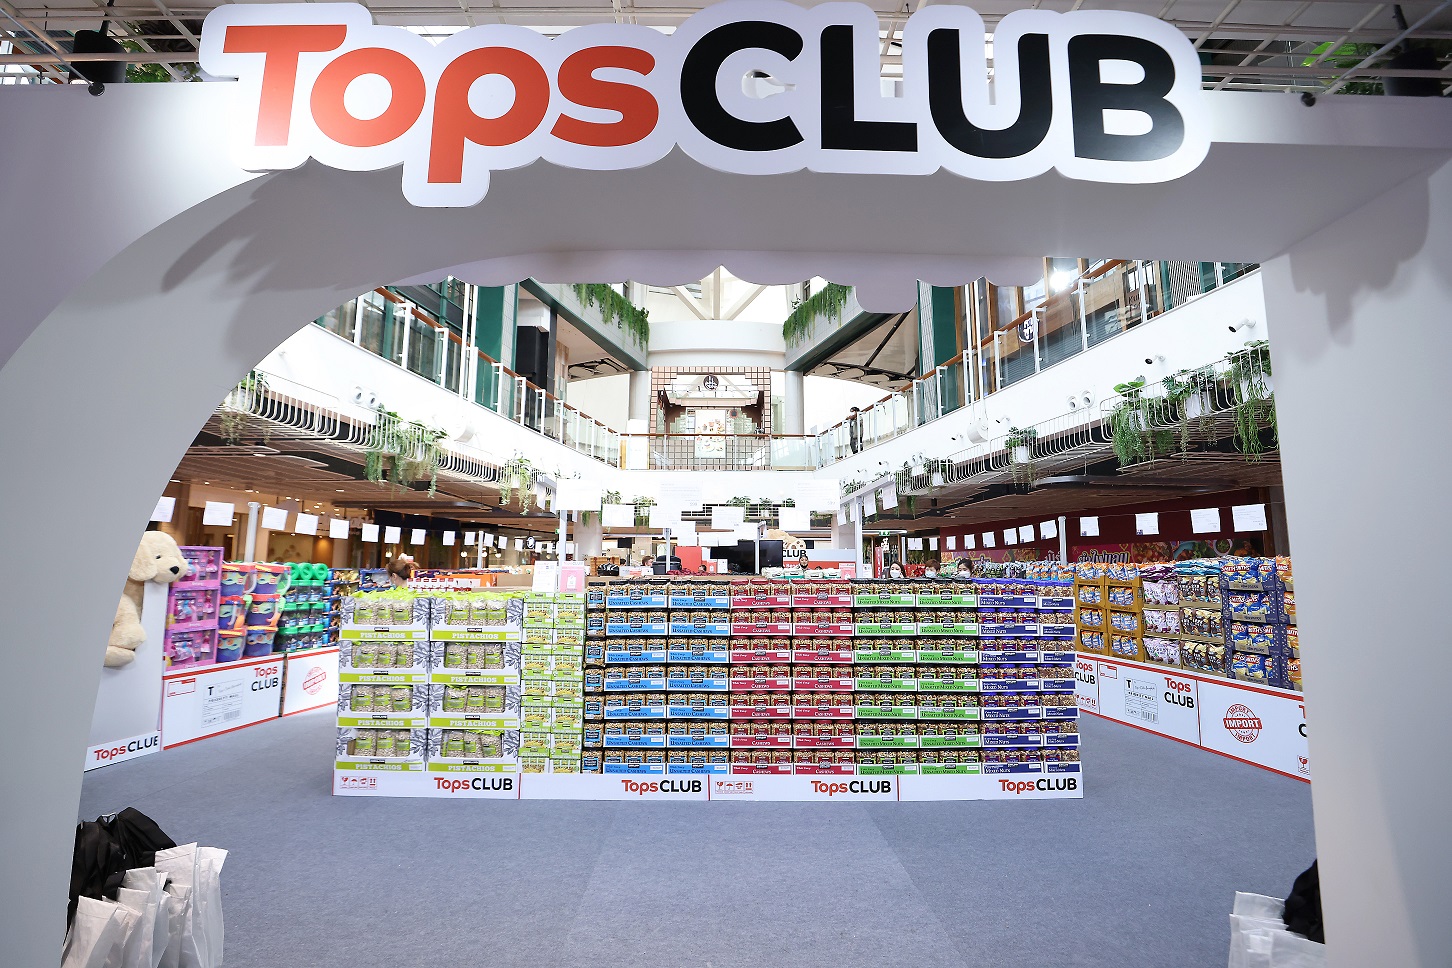 ‘ท็อปส์’ เปิดประสบการณ์ช้อปปิ้งสุดเอ็กซ์คลูซีฟแห่งแรกของไทย แบบไม่ต้องบินไปไกลถึงเมืองนอก ณ ‘Tops CLUB’ Pop-up Store